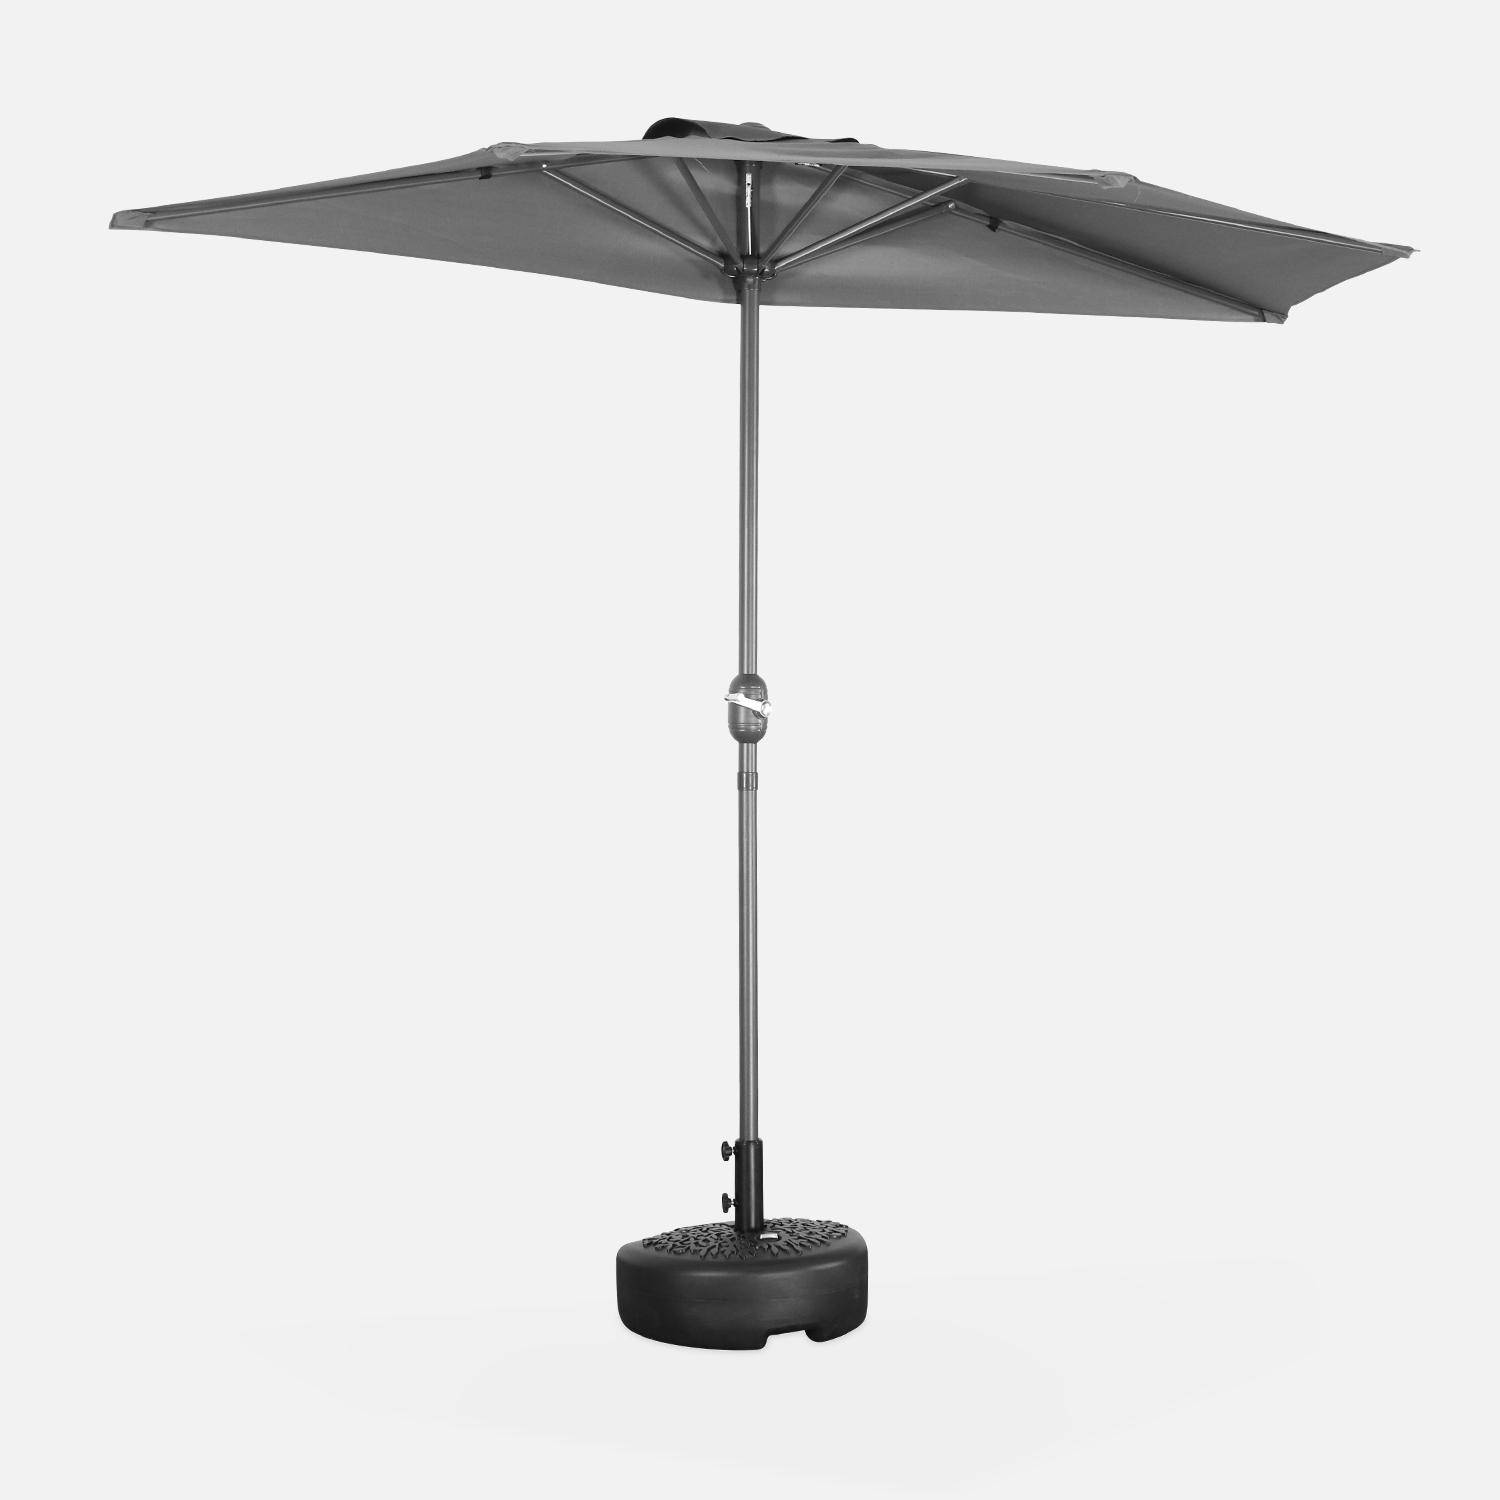  Parasol de balcon Ø250cm  – CALVI – Demi-parasol droit, mât en aluminium avec manivelle d’ouverture, toile grise Photo2